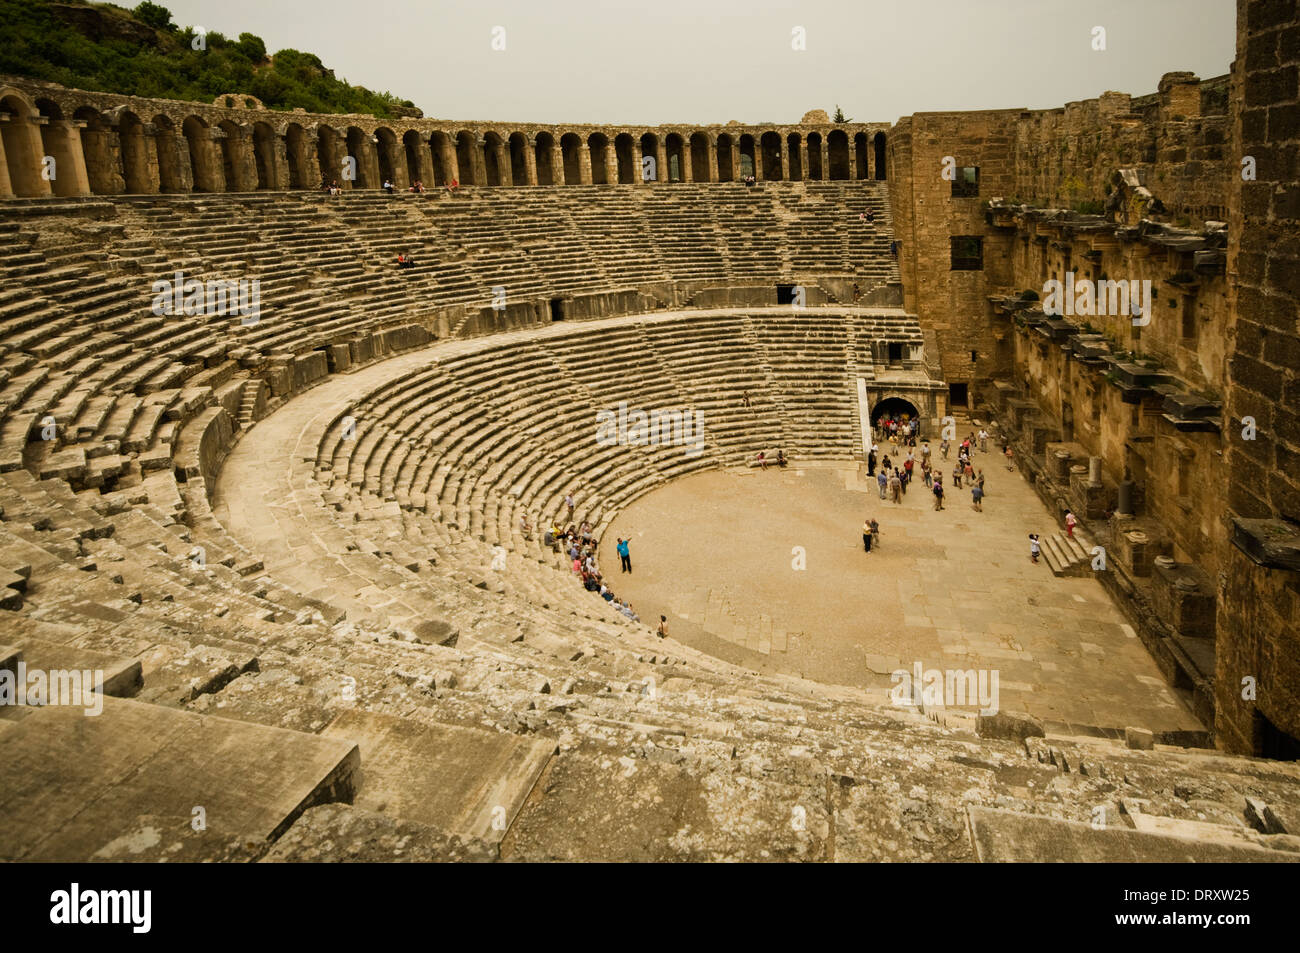 L'Asie, la Turquie, Méditerranée Occidentale, Aspendos, le théâtre (61 - 80 15 000 AD, capacité) Banque D'Images